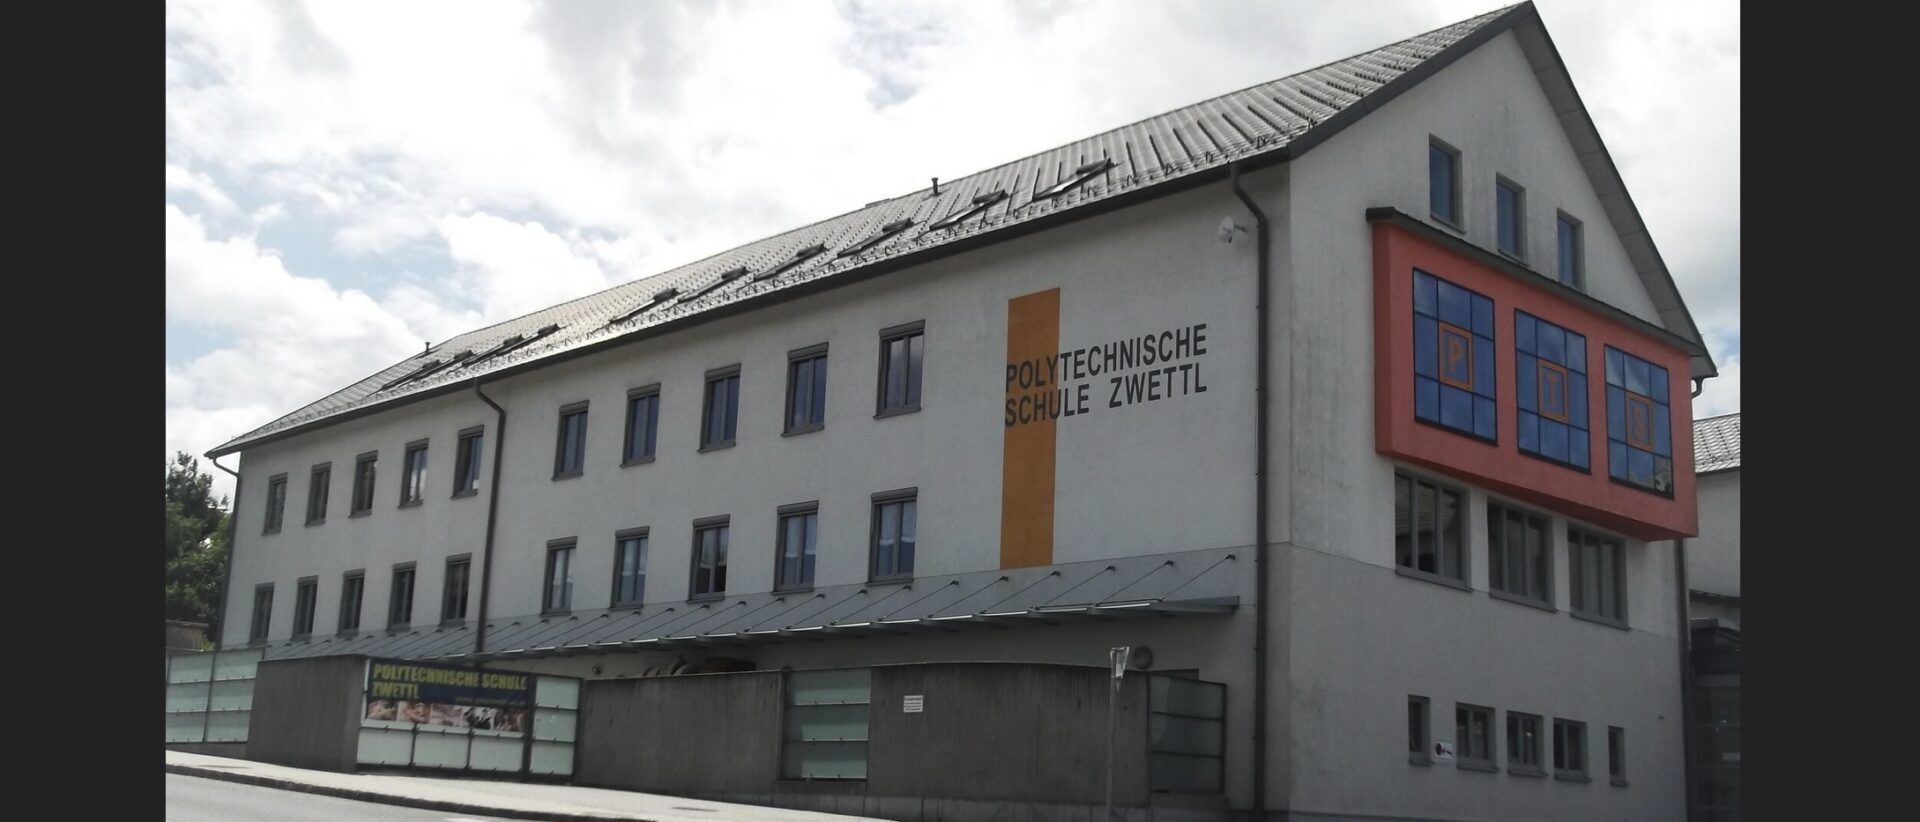 Im frühren Seminar Zwettl ist heute die Polytechnische Schule untergebracht.